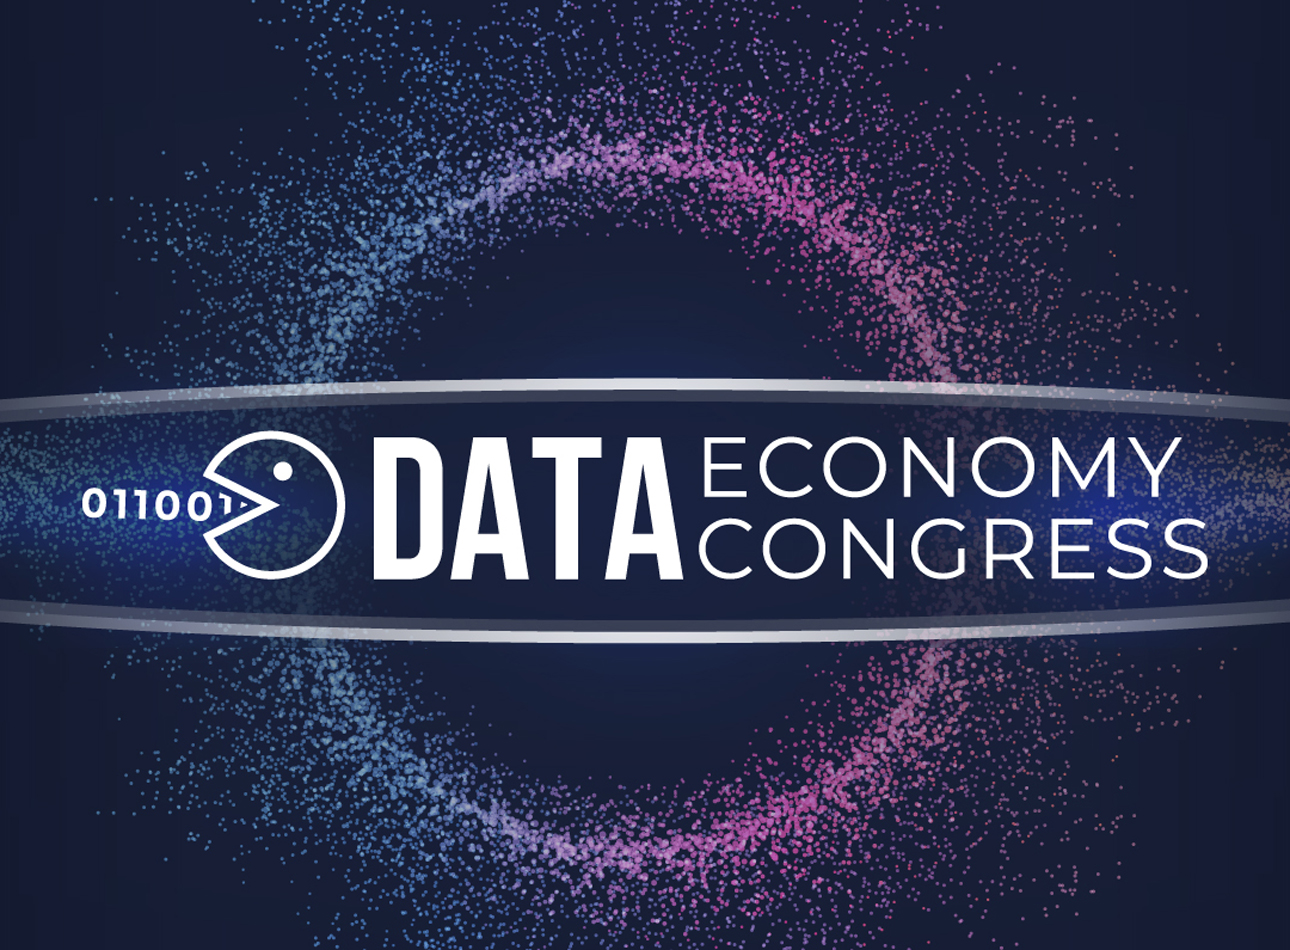 Grafika przedstawiająca logo "DATA ECONOMY CONGRESS" na ciemnoniebieskim tle z supernową i cyfrowym kodem binarnym.